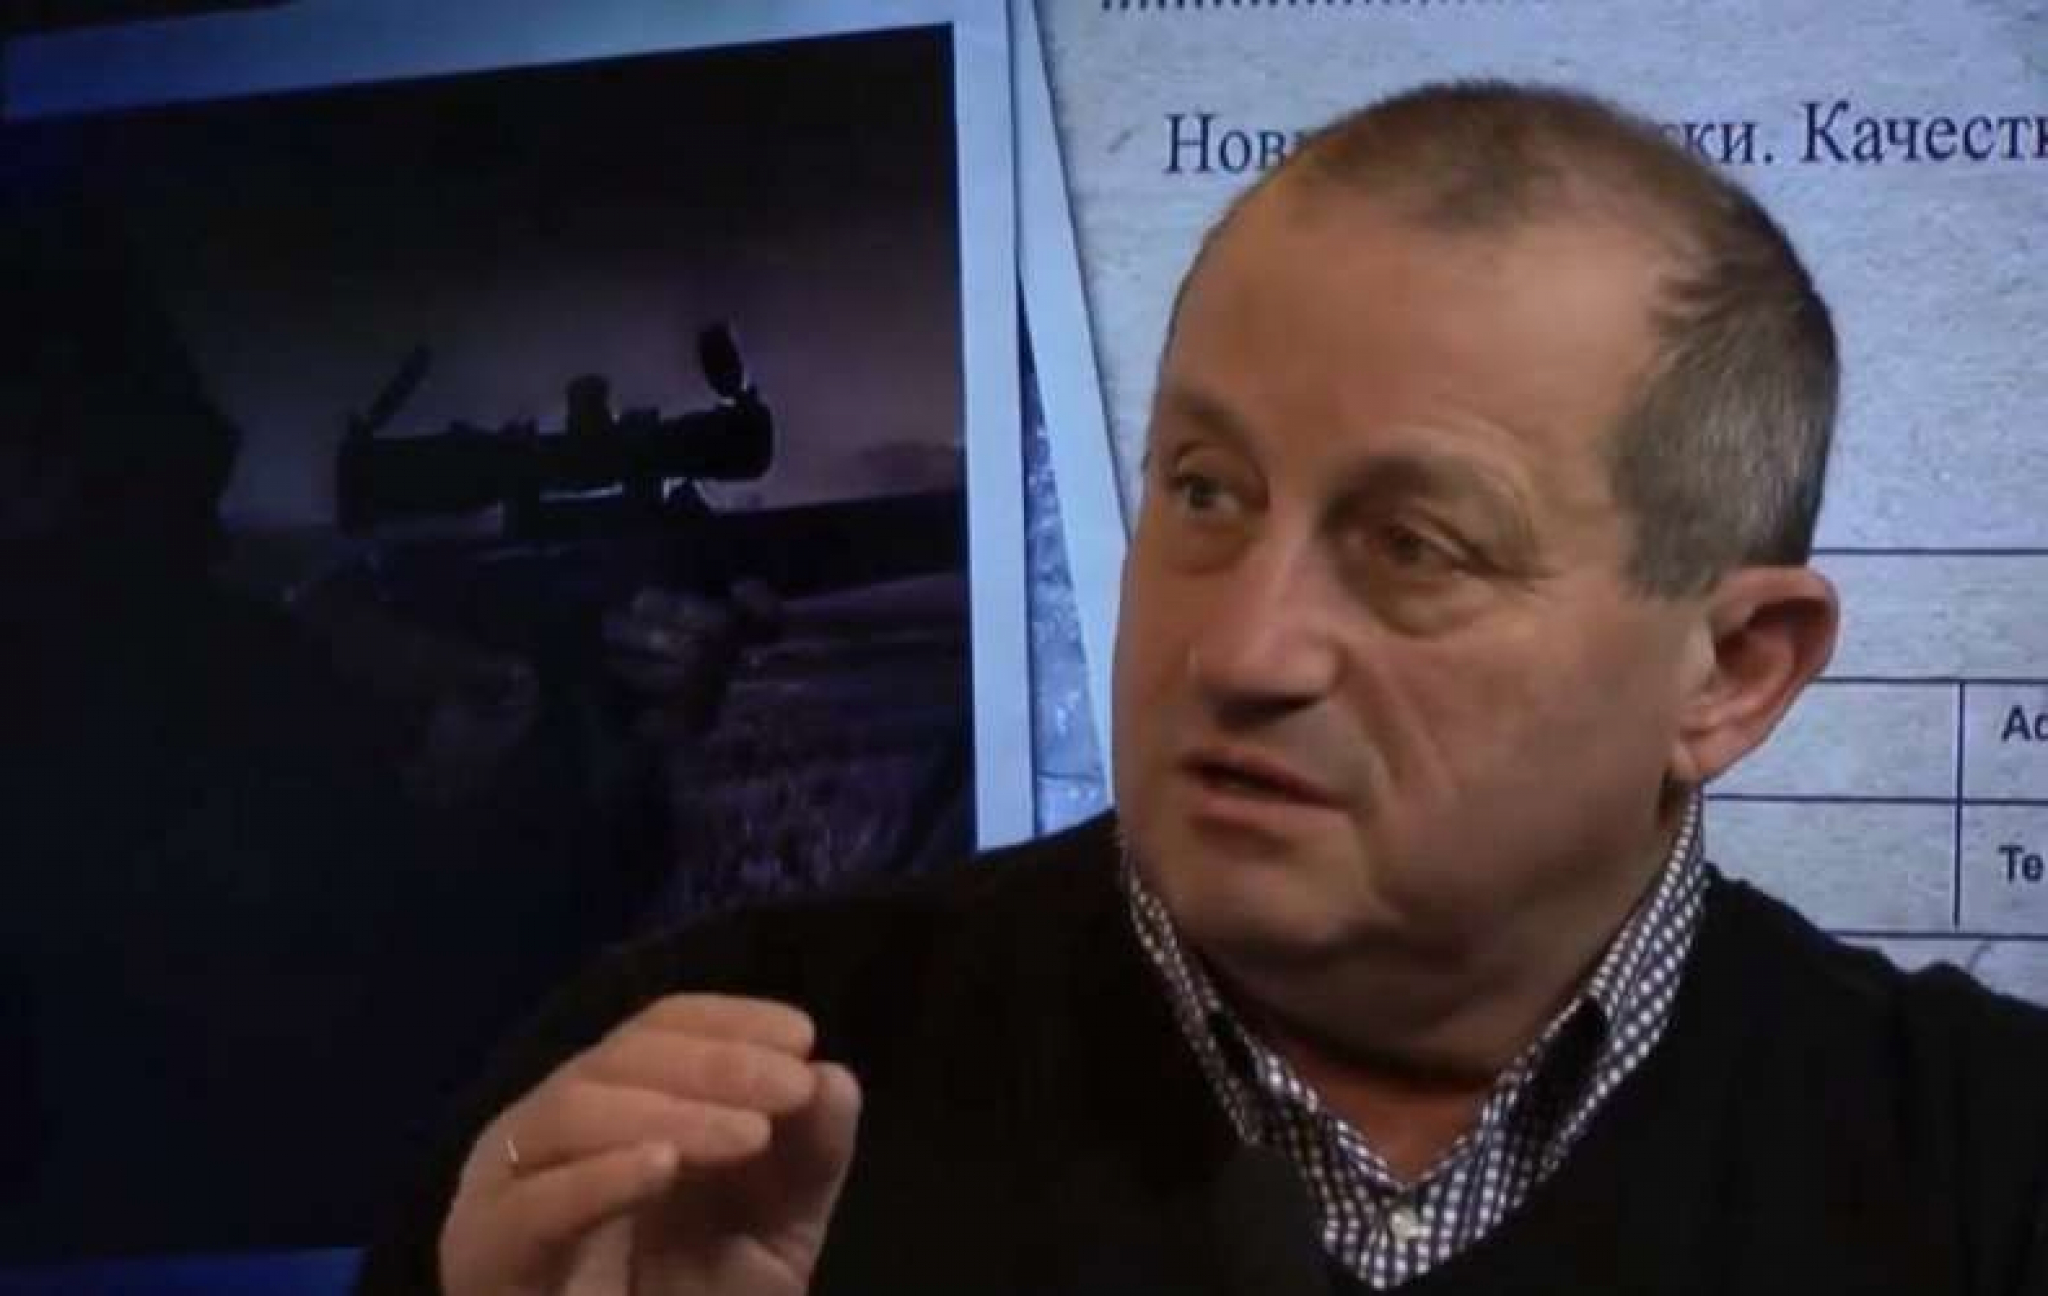 VELIKA PROMENA NA MAPI EVROPE Bivši izraelski obaveštajac predviđa - Ukrajina nestaje!